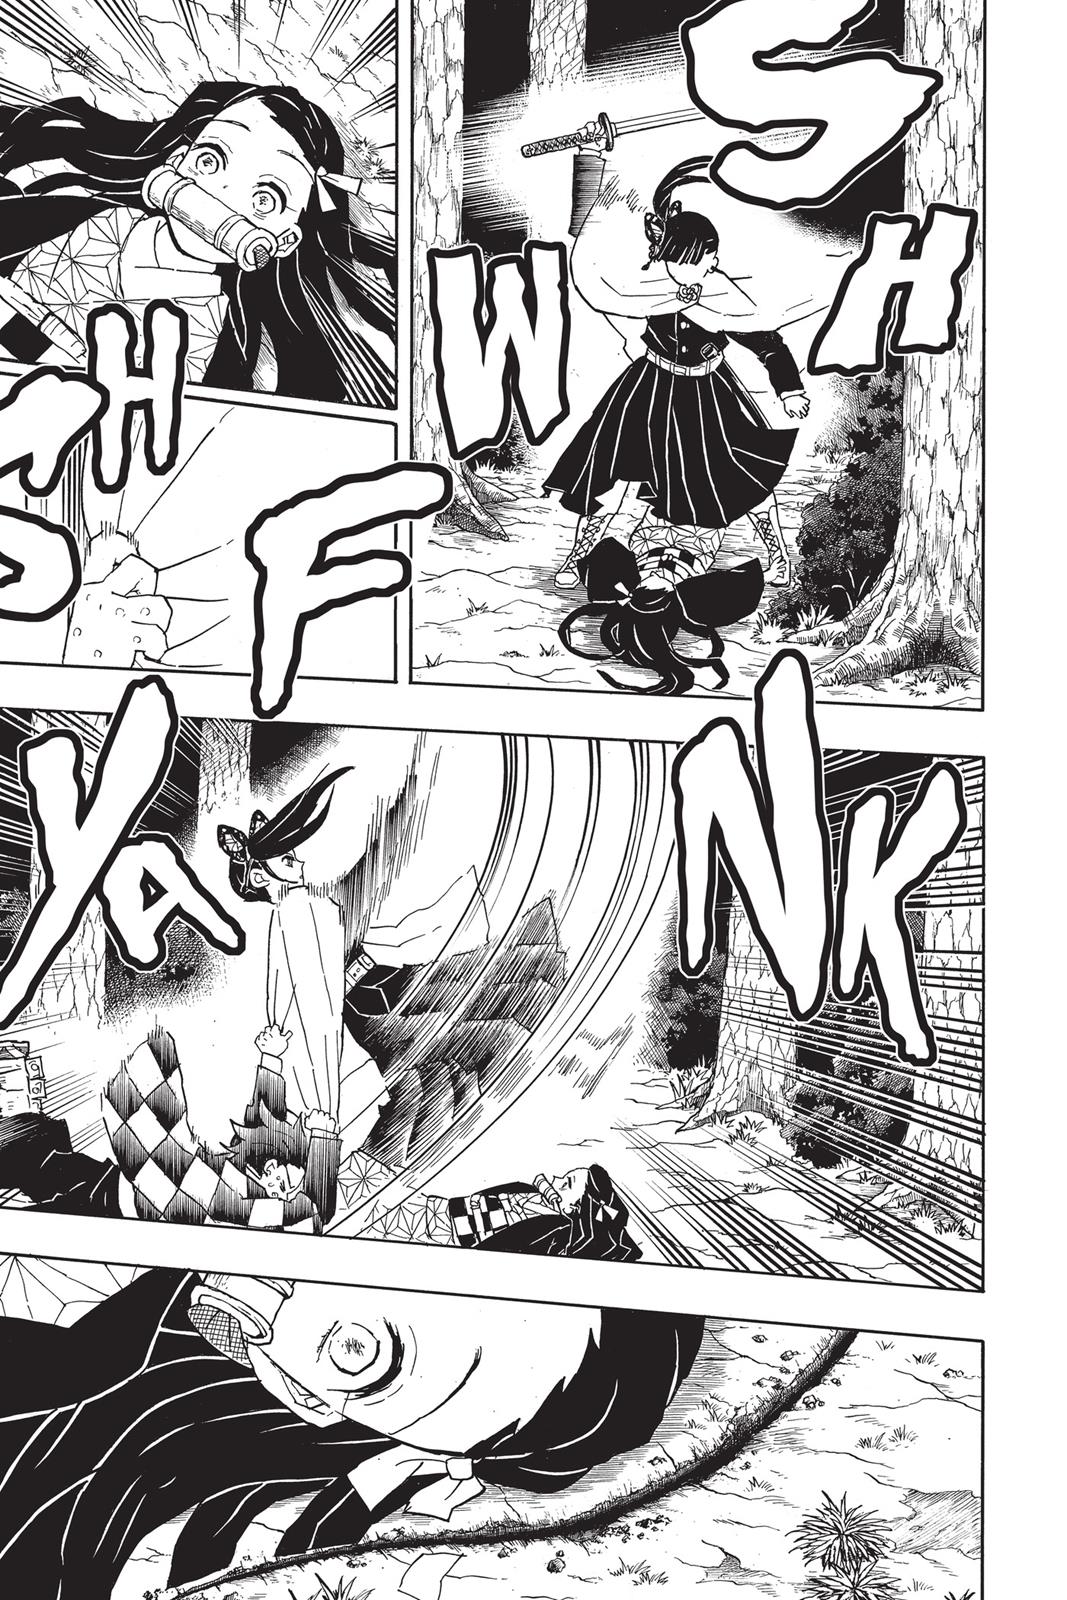 Demon Slayer Manga Manga Chapter - 44 - image 7